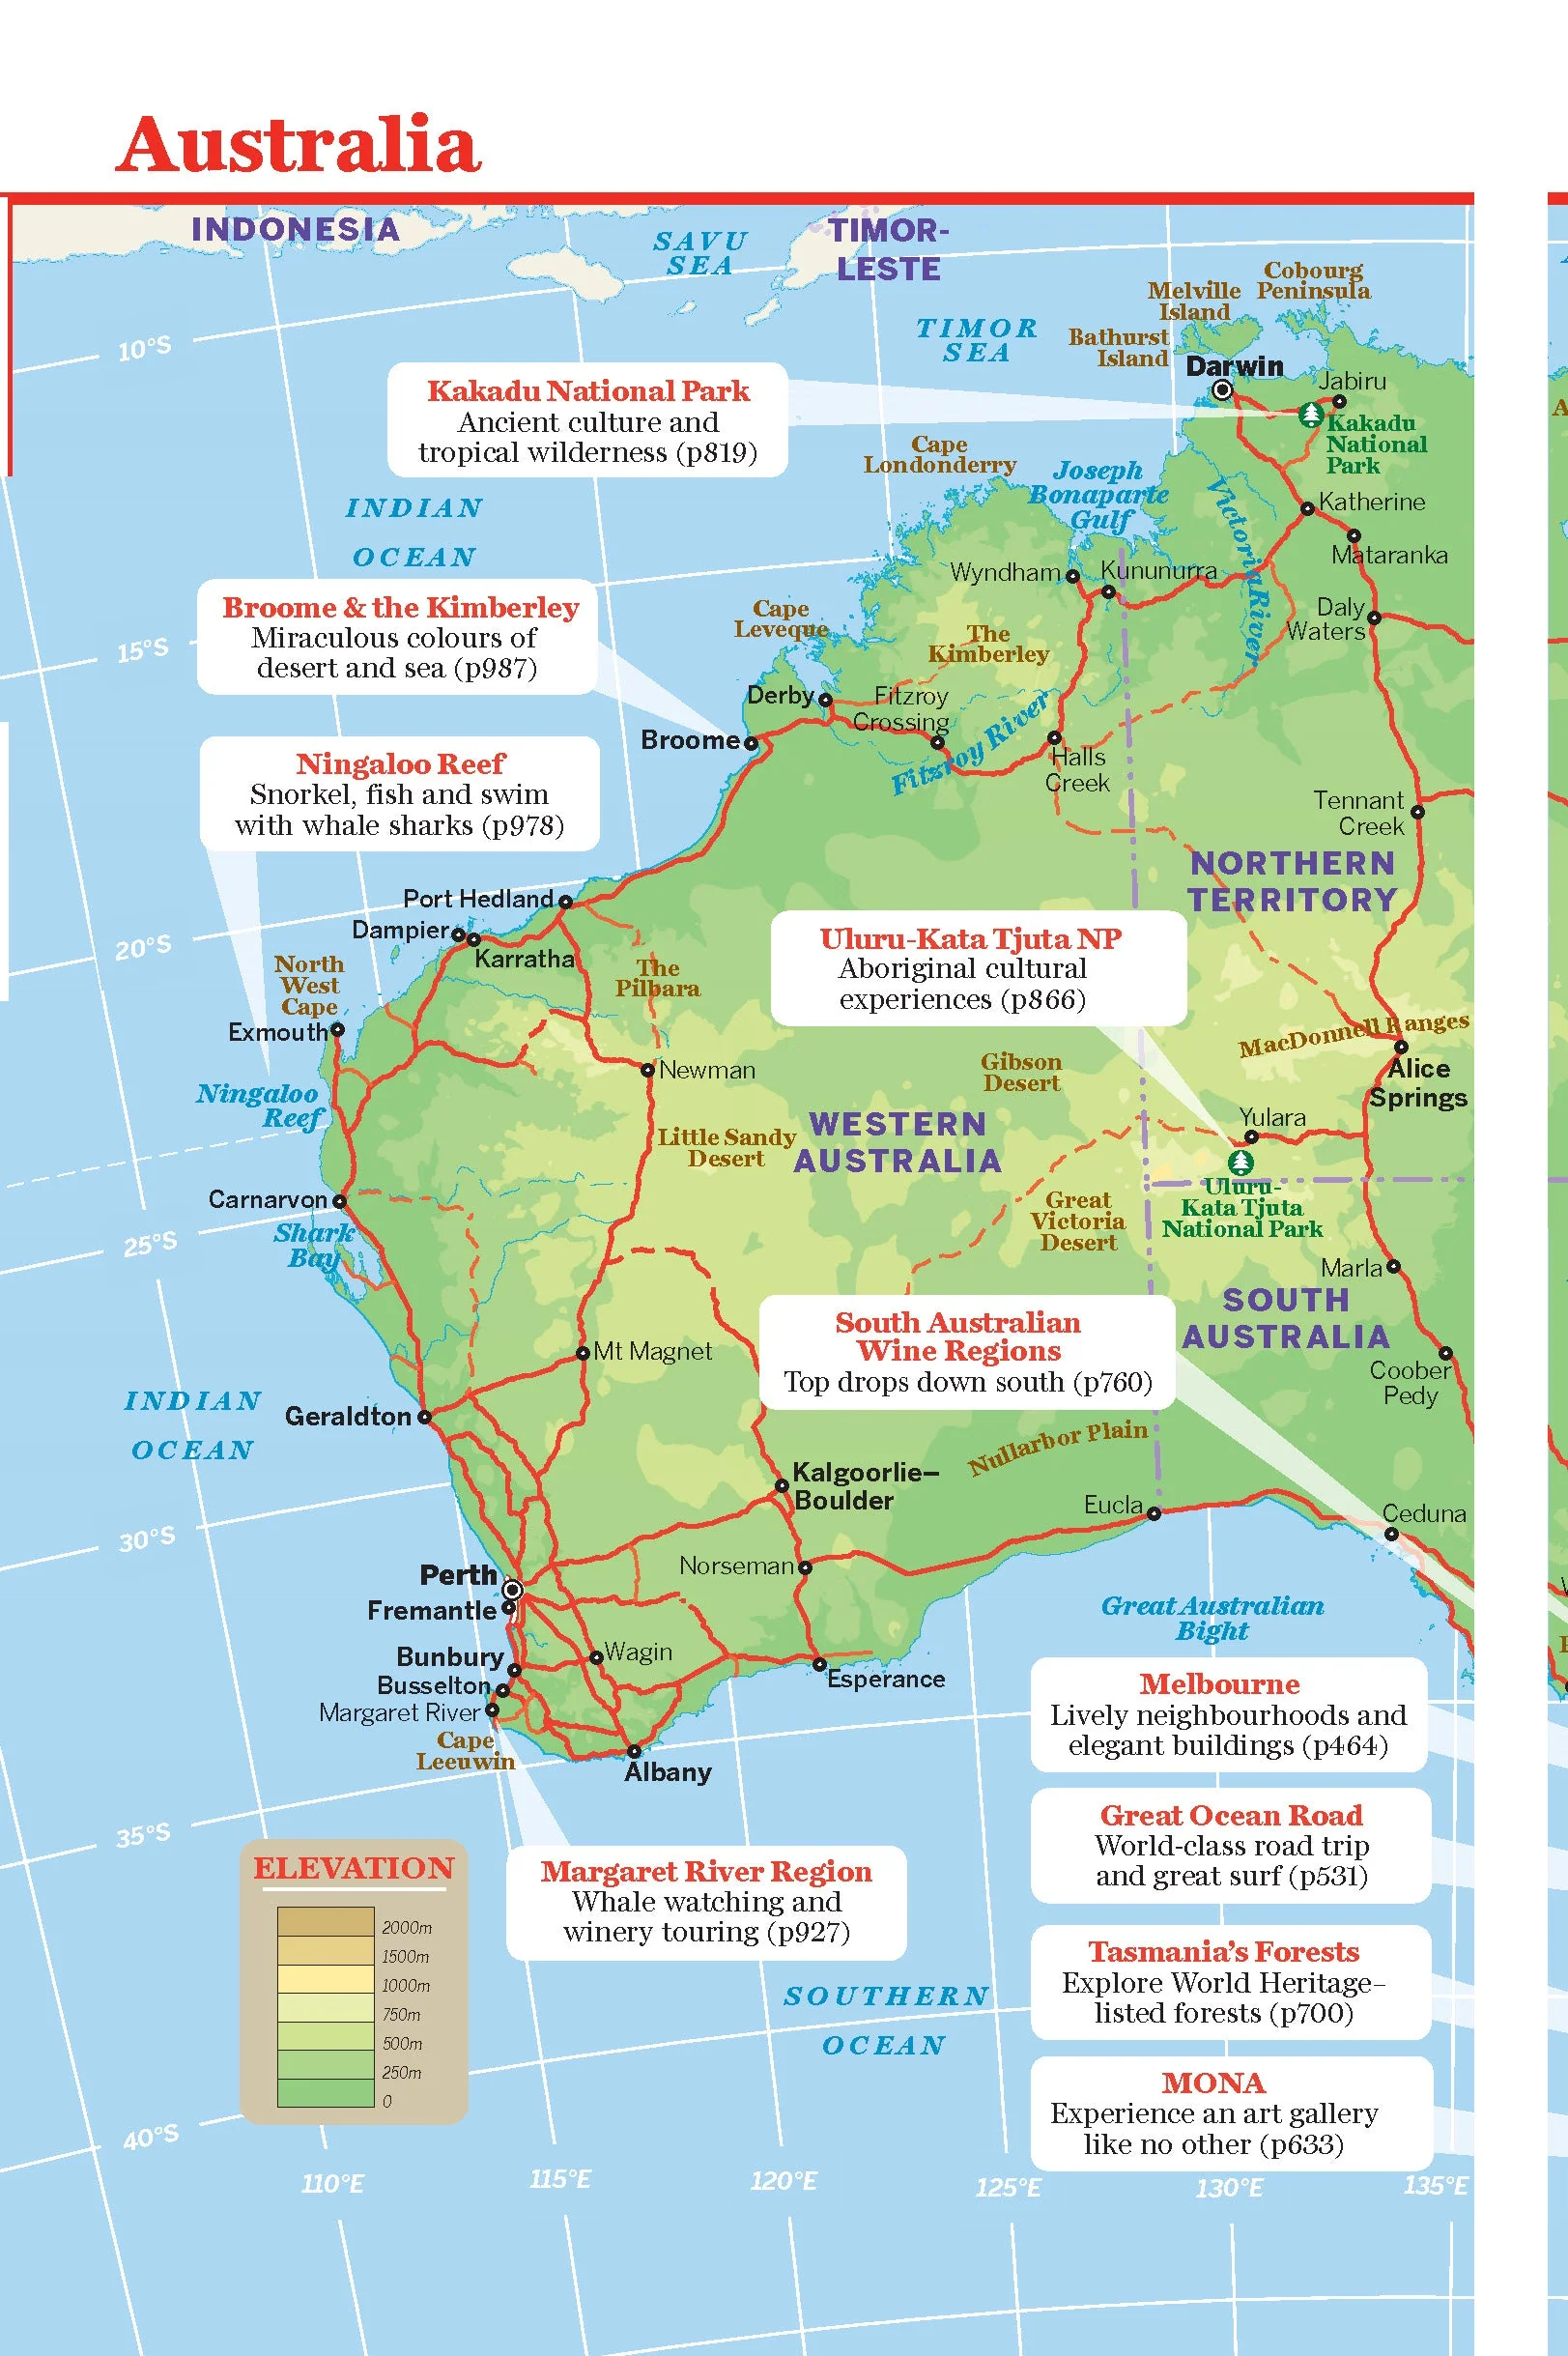 Australia Lonely Planet